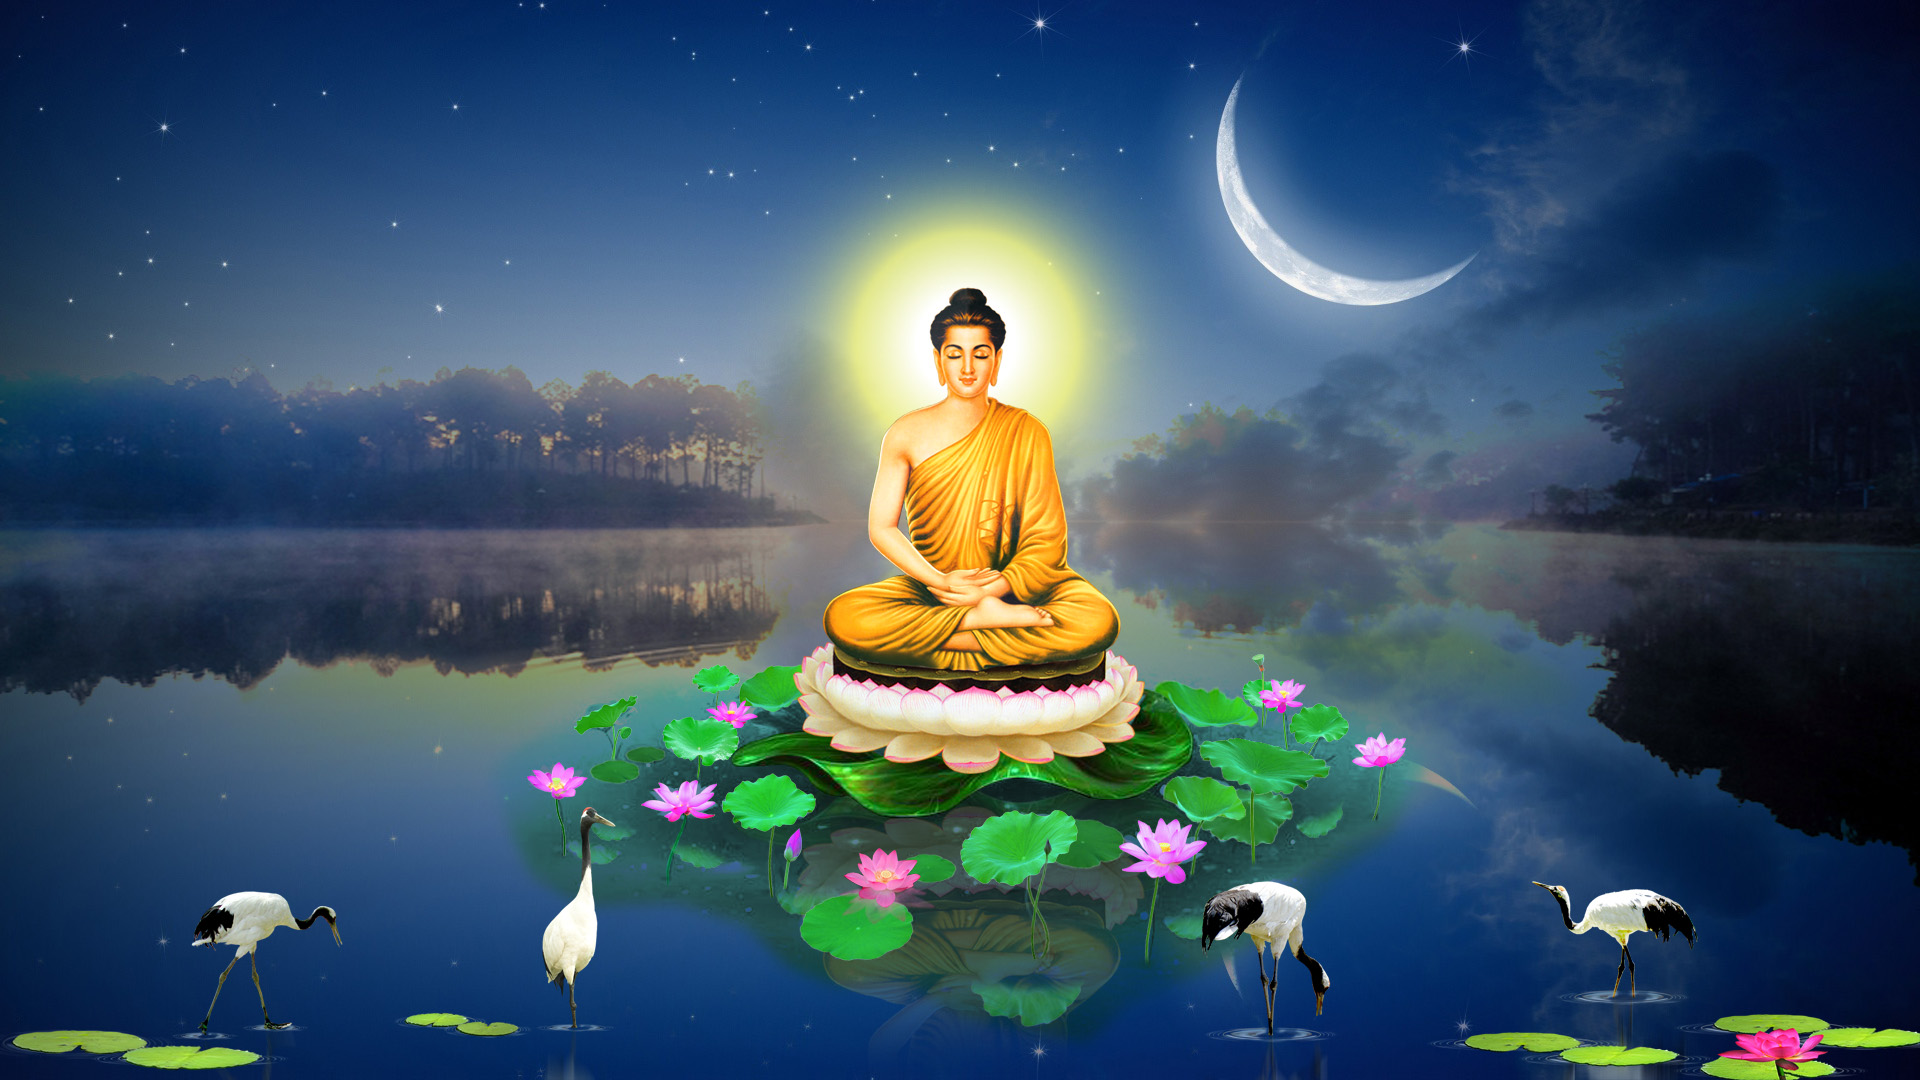 Bổn Sư Thích Ca Mâu Ni Phật là biểu tượng của sự từ bi và nhân ái. Với các bức tượng phật Thích Ca, chúng ta được nhắc nhở về cuộc đời và cách thức để sống một cuộc đời đầy ý nghĩa. Chiêm ngưỡng hình ảnh Bổn Sư Thích Ca Mâu Ni Phật để tâm hồn bạn được an lạc và thanh tịnh.